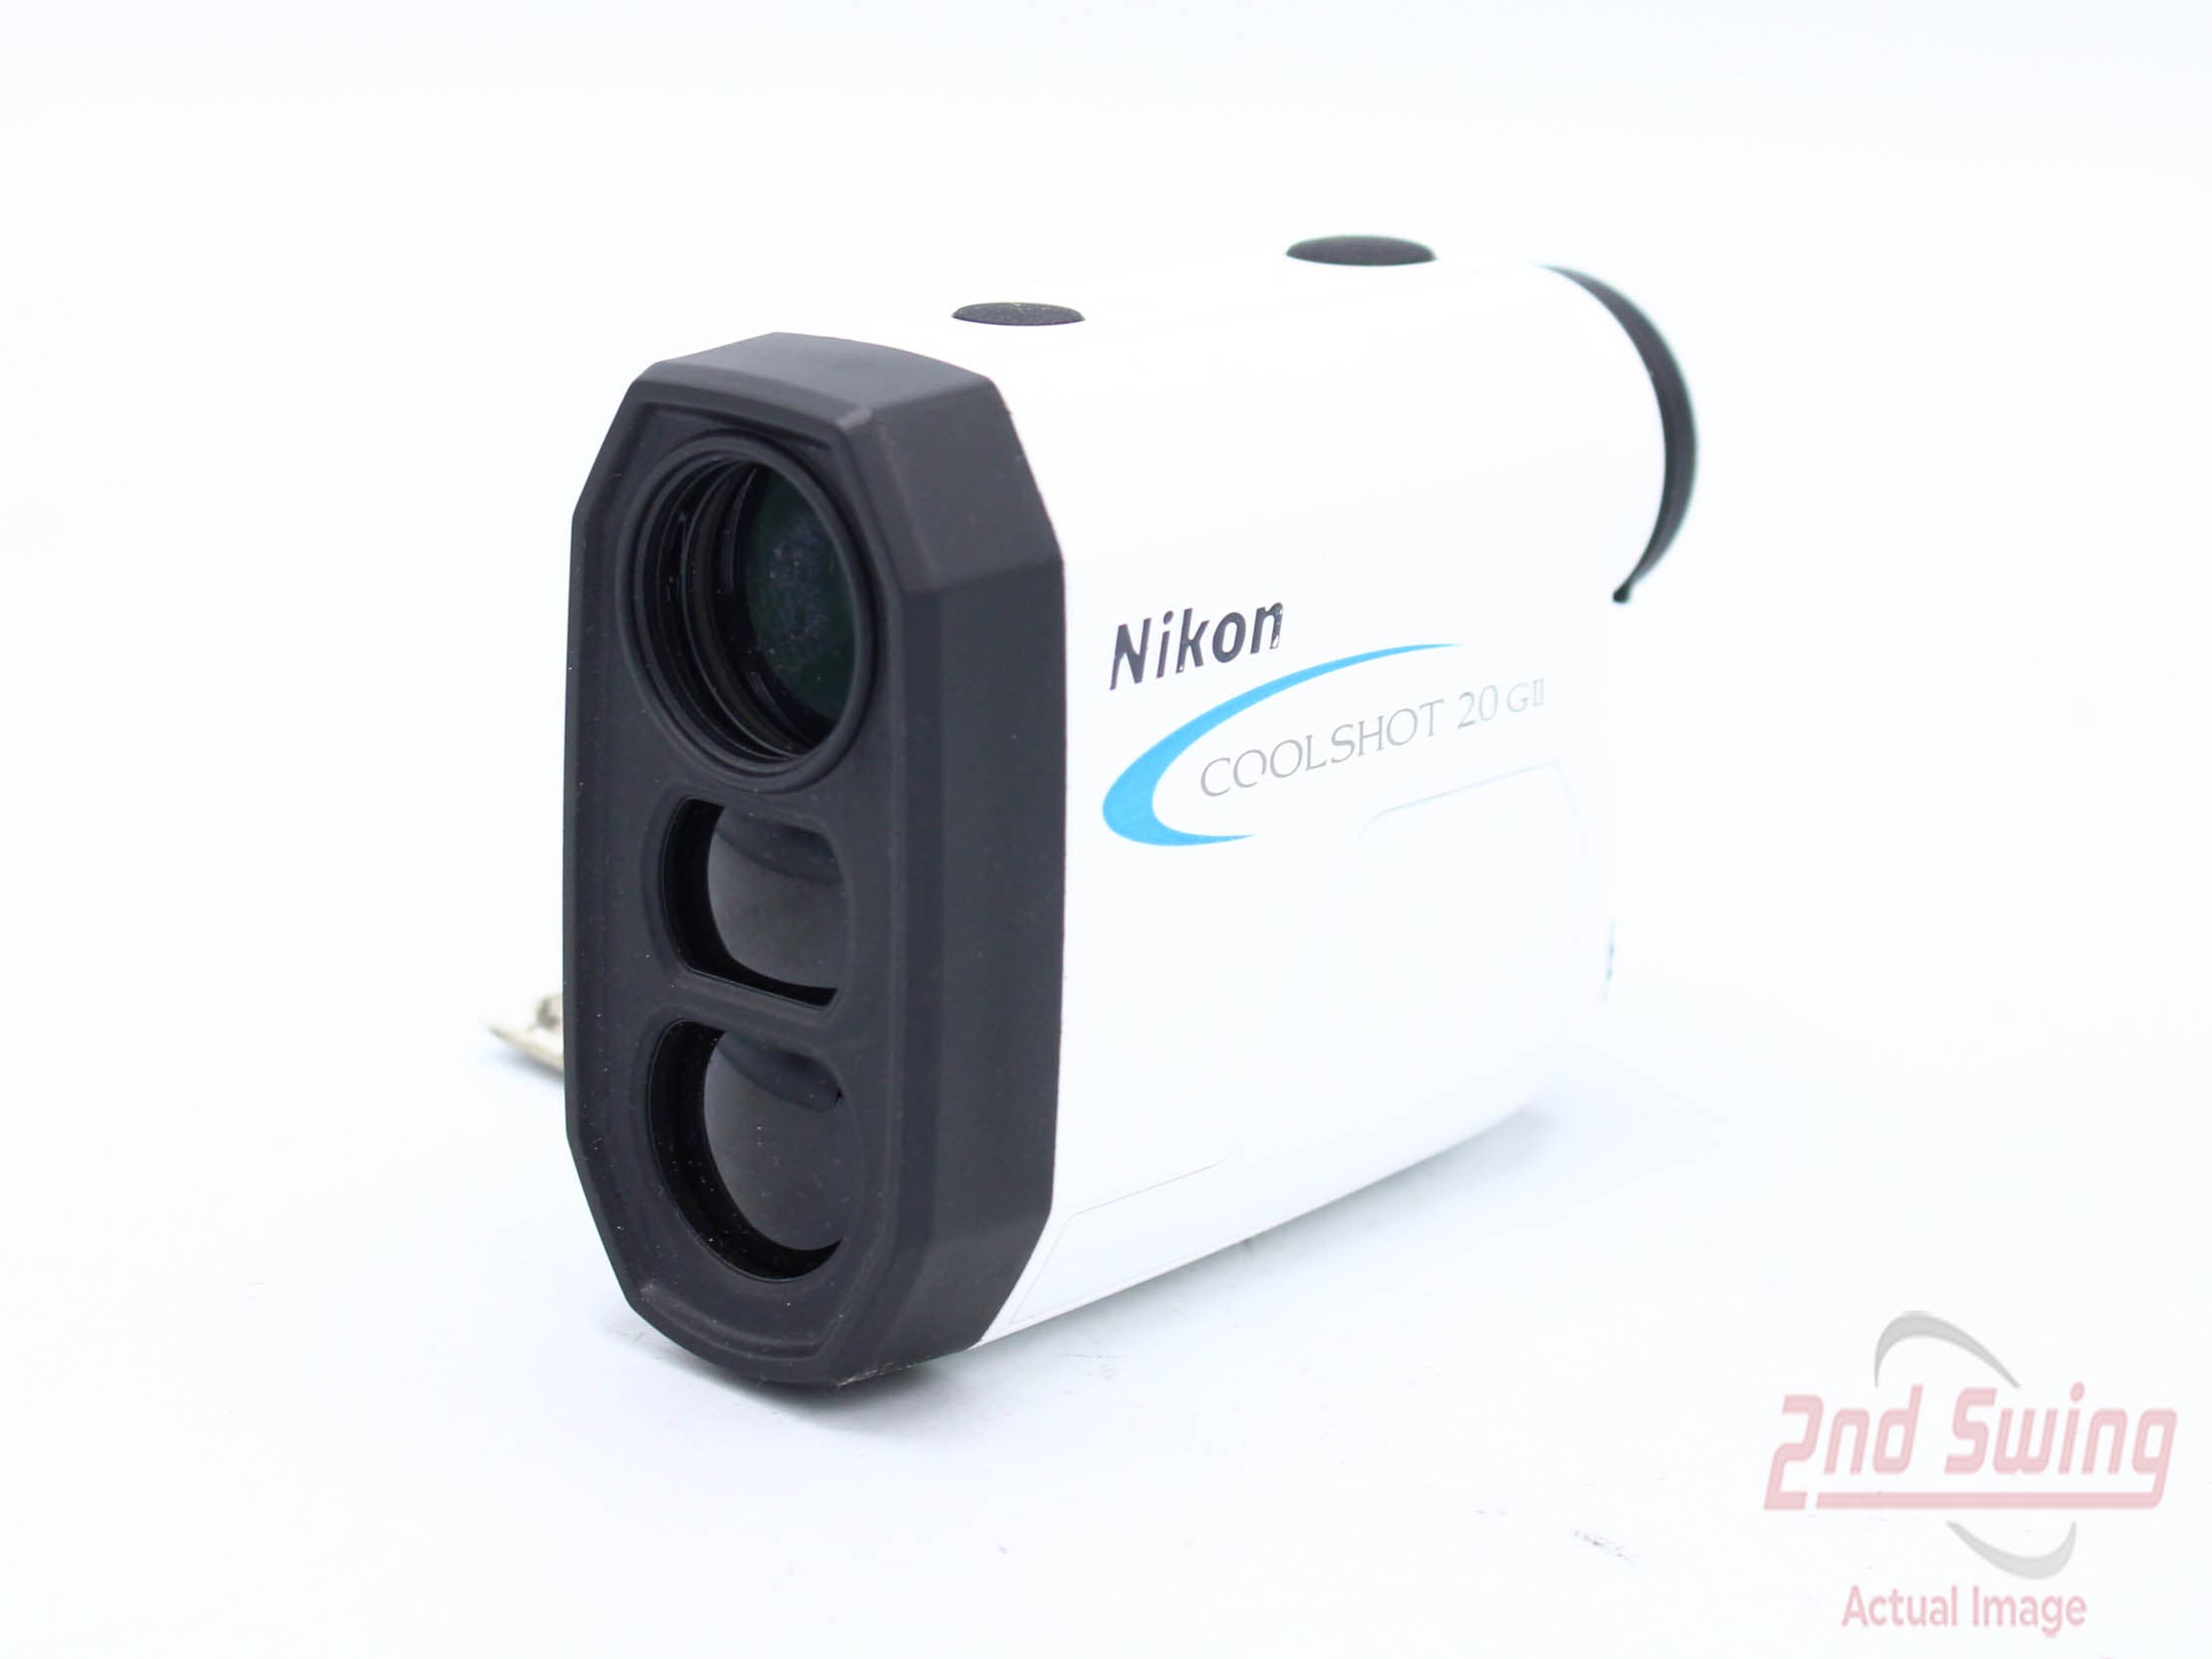 Nikon Coolshot 20 GII Golf GPS & Rangefinders (D-N2227320477